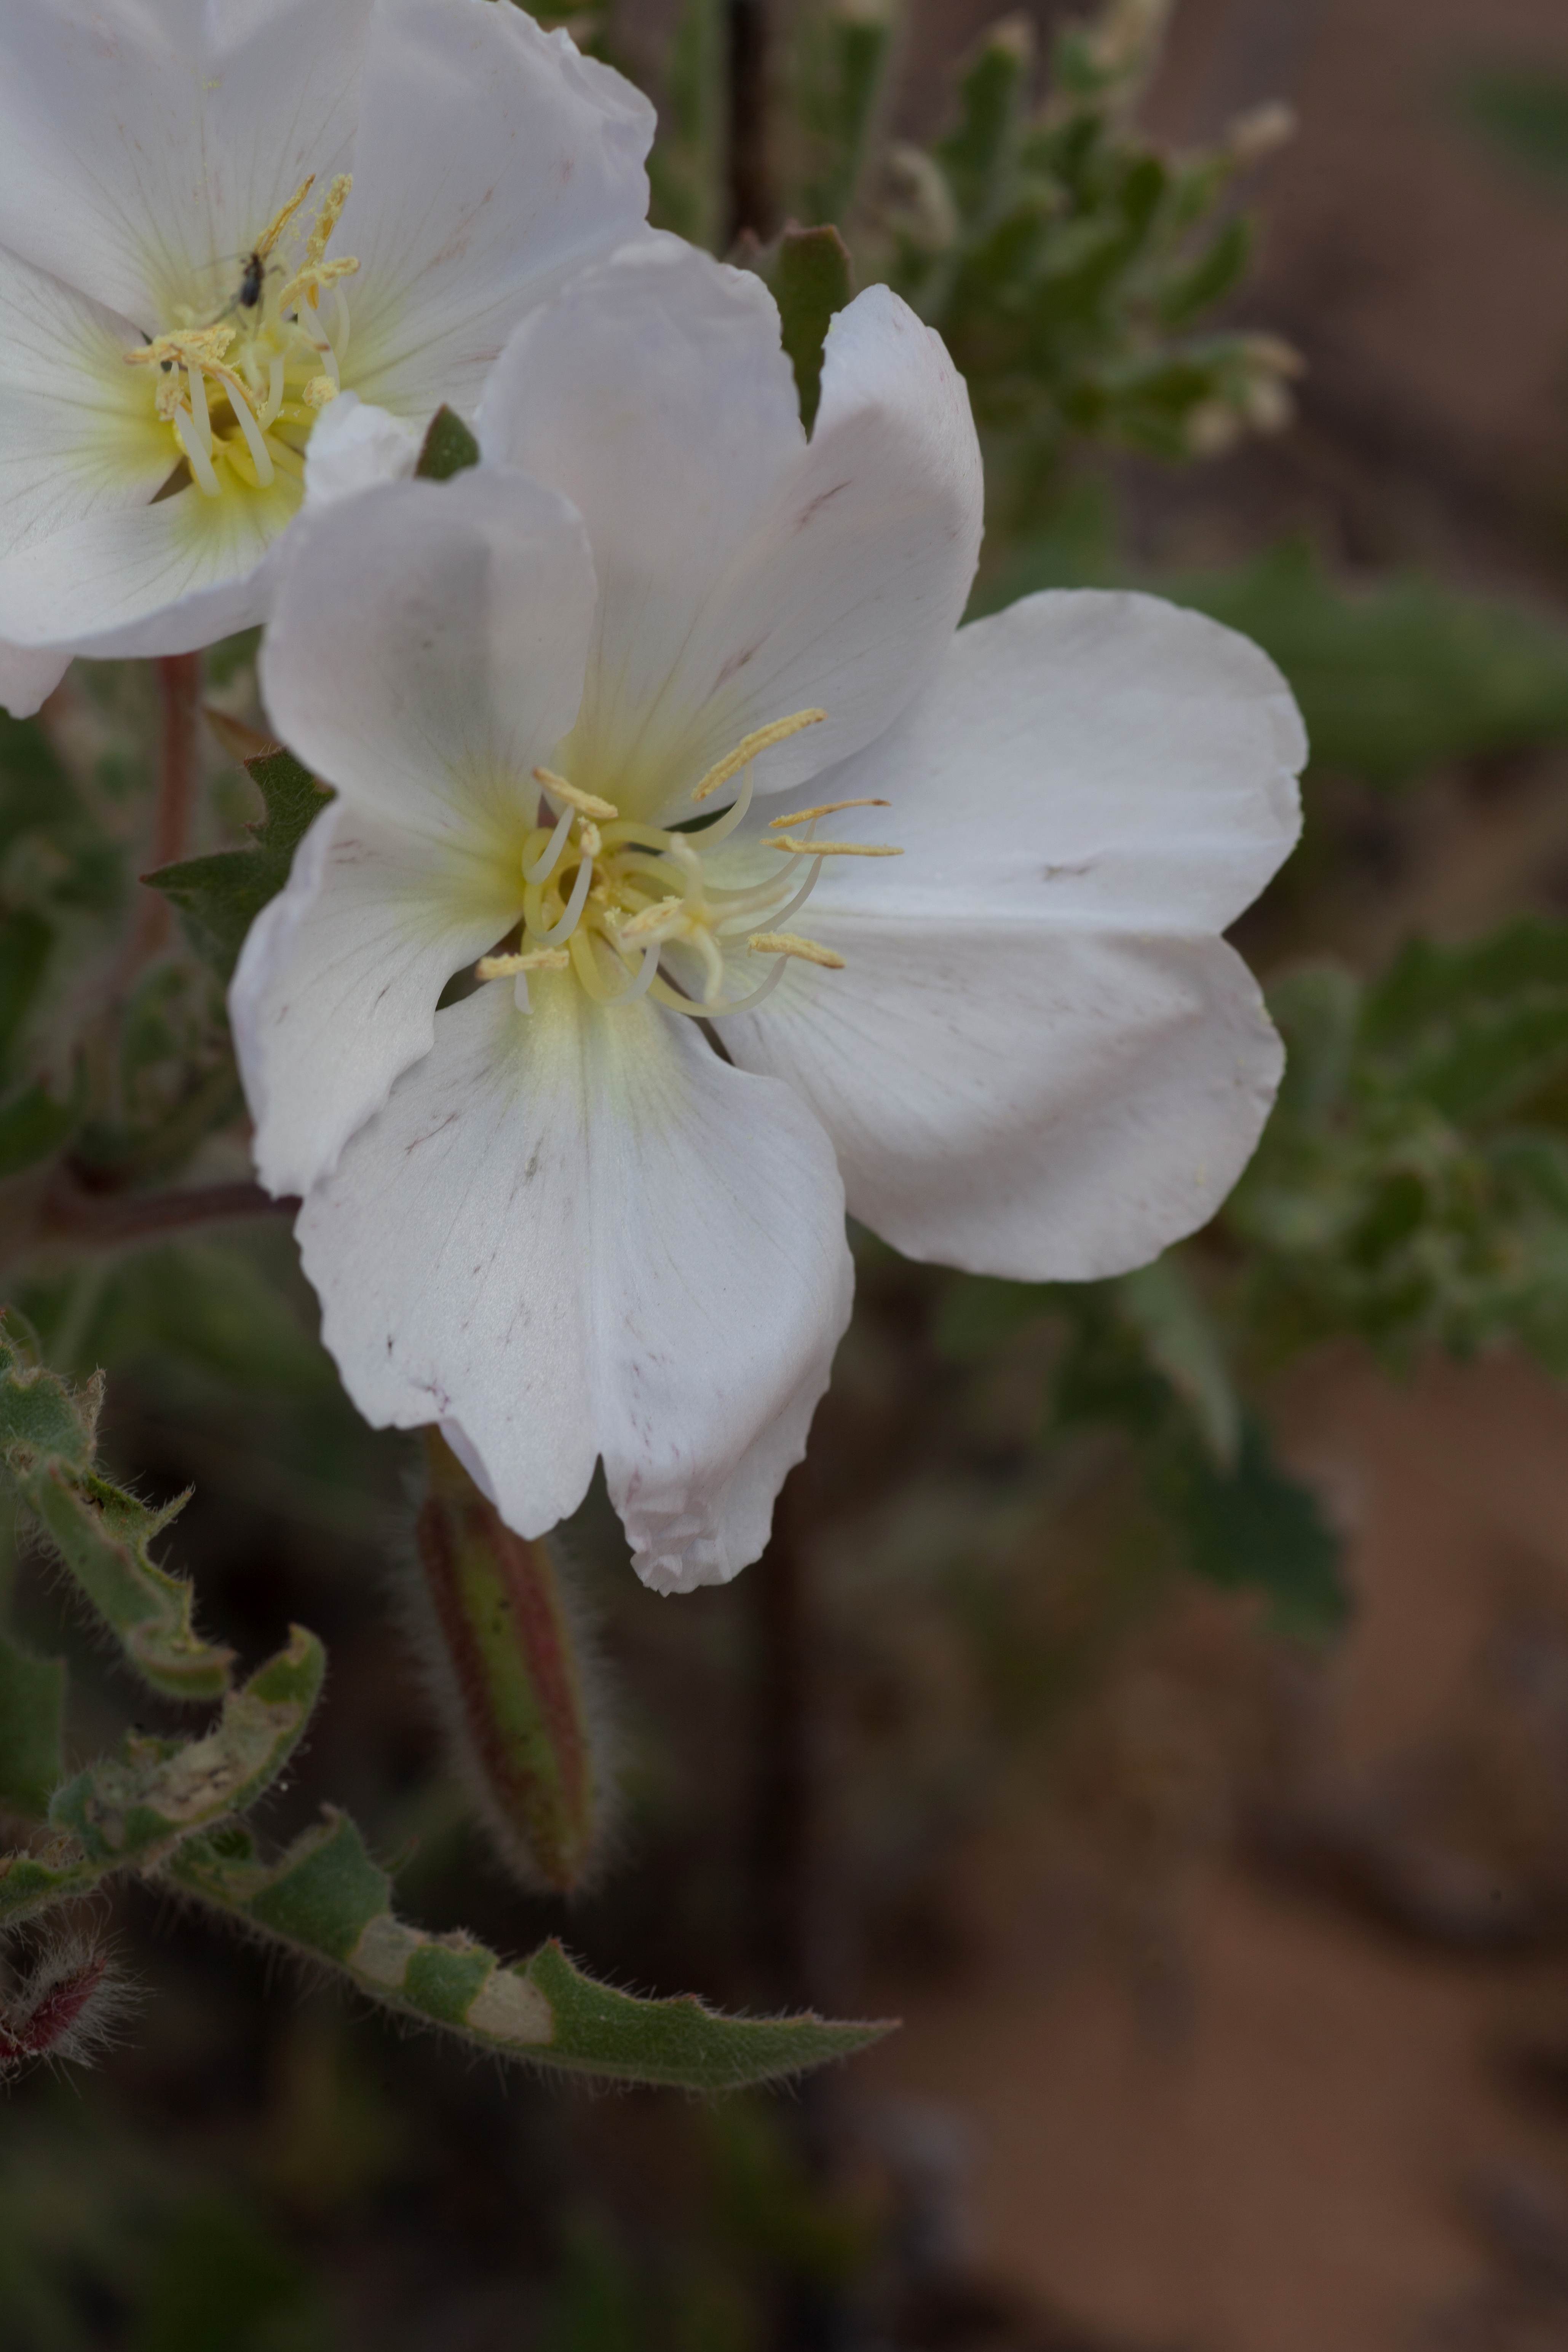 Image libre: fleur blanche, tige, onagre, de près, la floraison